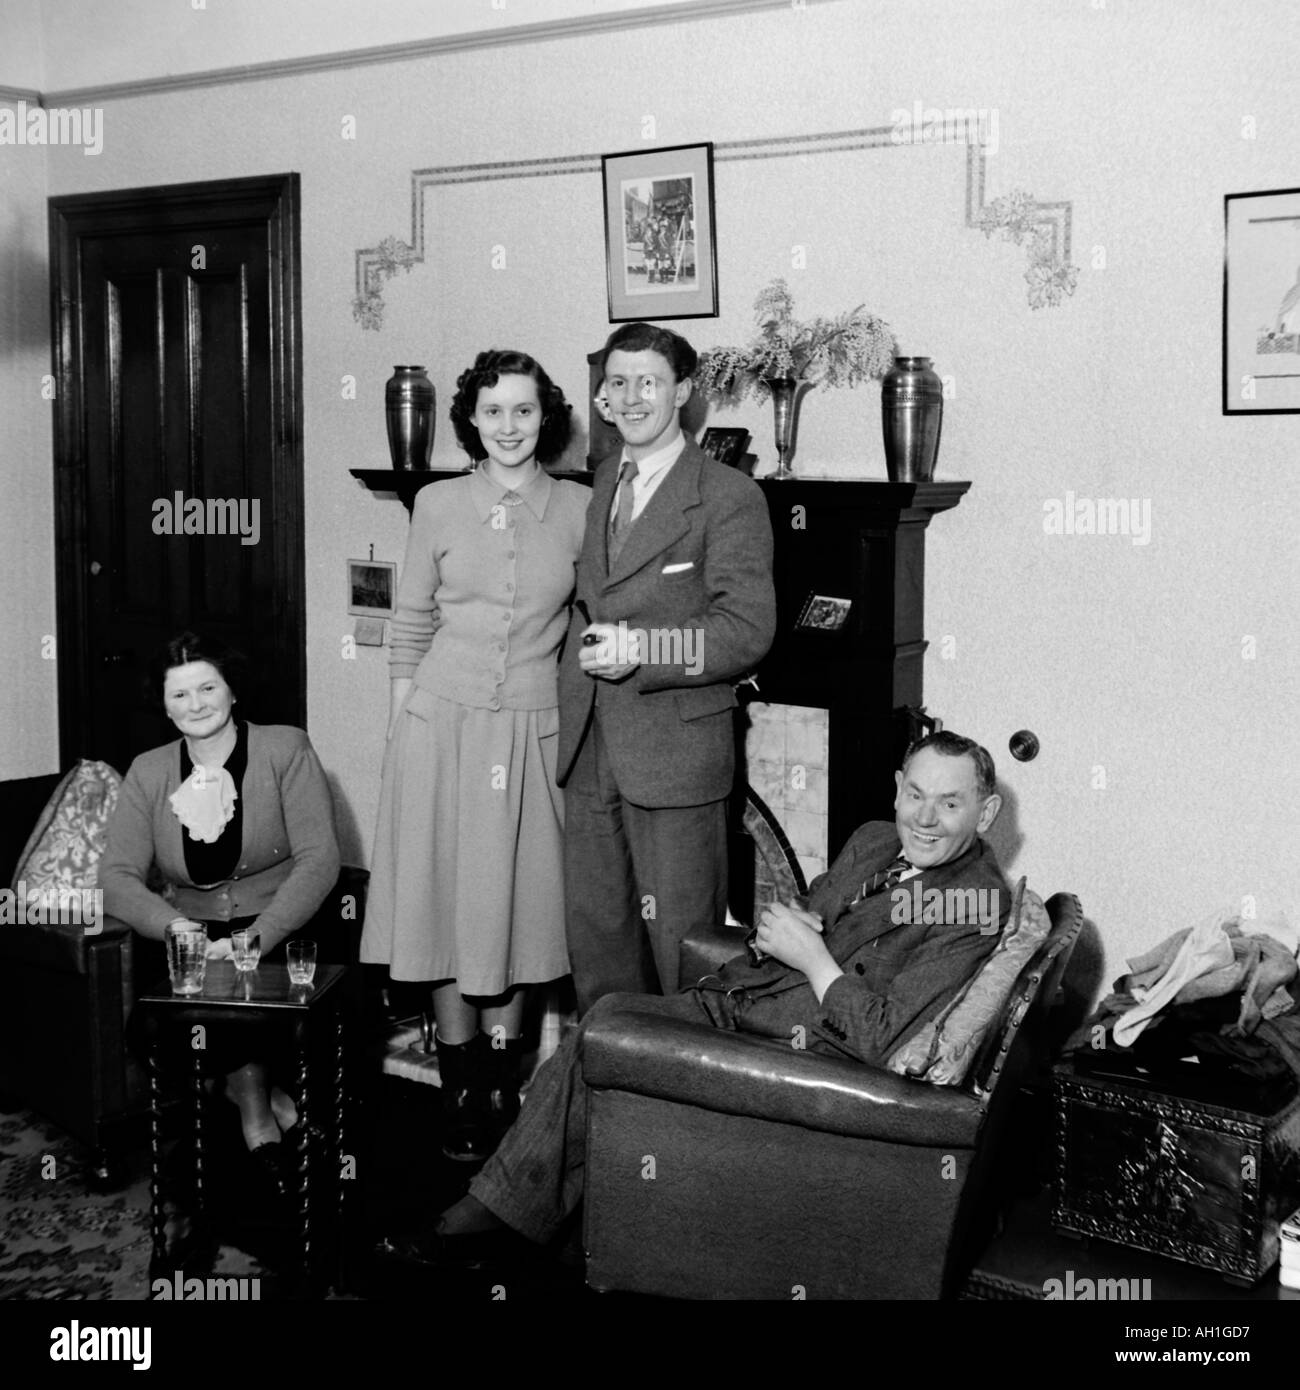 OLD VINTAGE PHOTO DE FAMILLE SNAP SHOT (couple marié AVEC LES PARENTS DANS LA SALLE DE SÉJOUR vers 1950 Banque D'Images